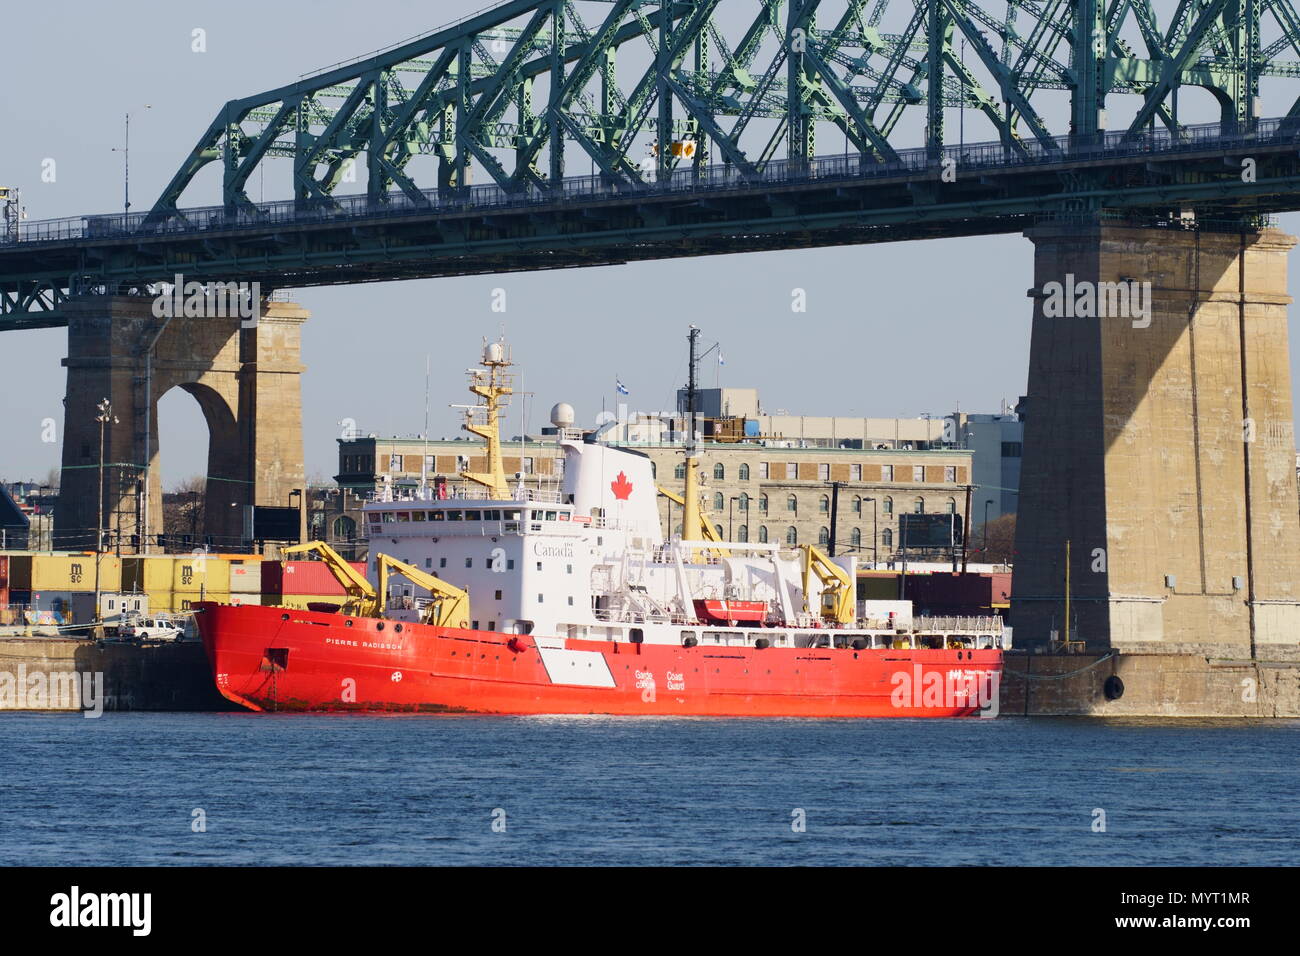 Montreal, QC / Canadá - June 7th, 2018 : Barco de la Guardia Costera canadiense ubicado sobre el río San Lorenzo River en el puerto de Montreal, Canadá. Foto de stock